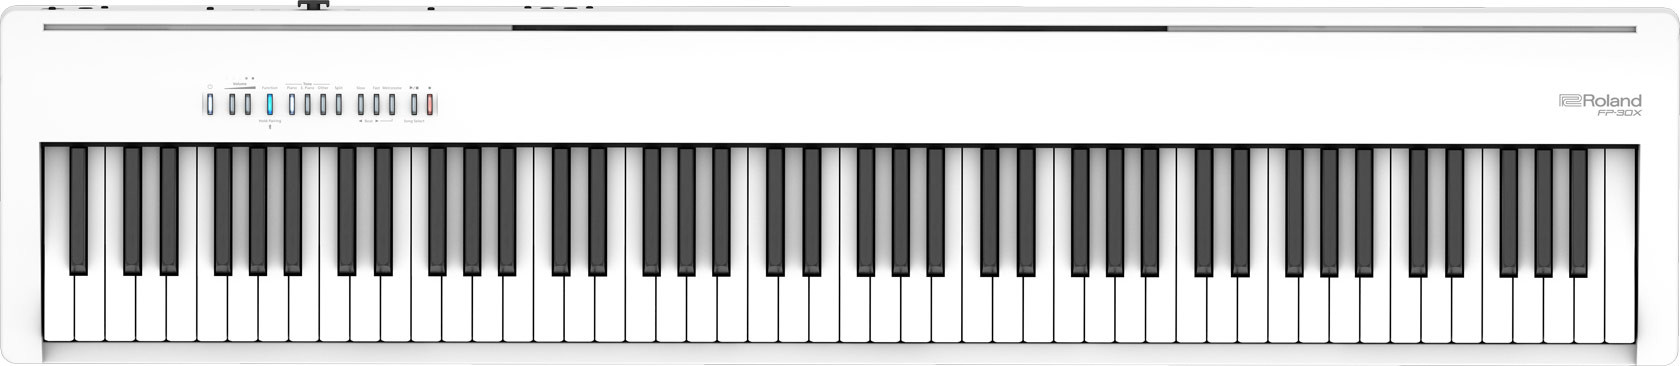 Hlavní obrázek Stage piana ROLAND FP-30X WH